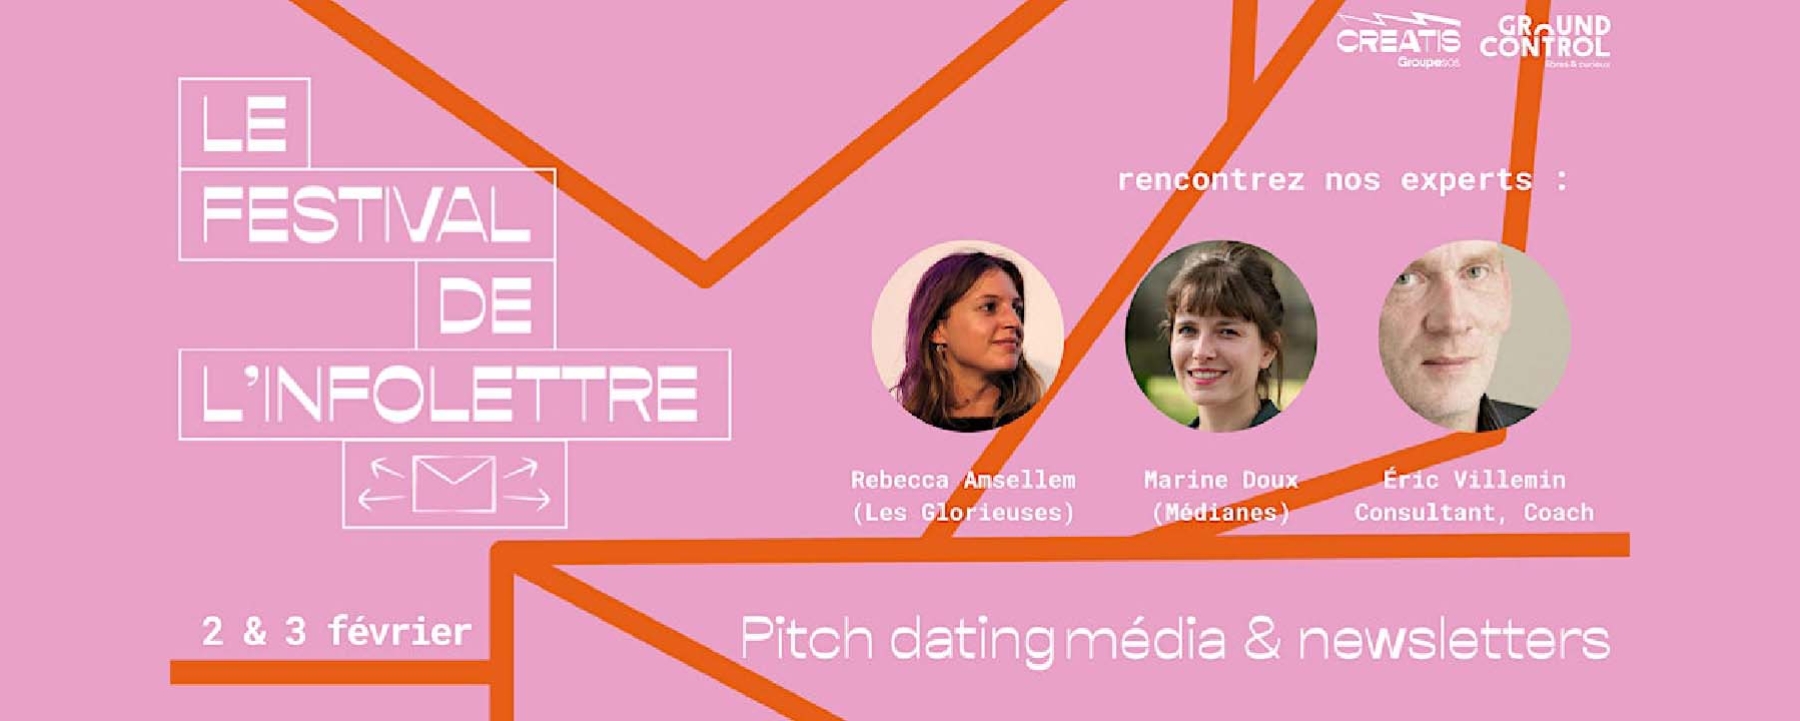 Pitch dating experts médias & newsletters (Festival de l'infolettre)